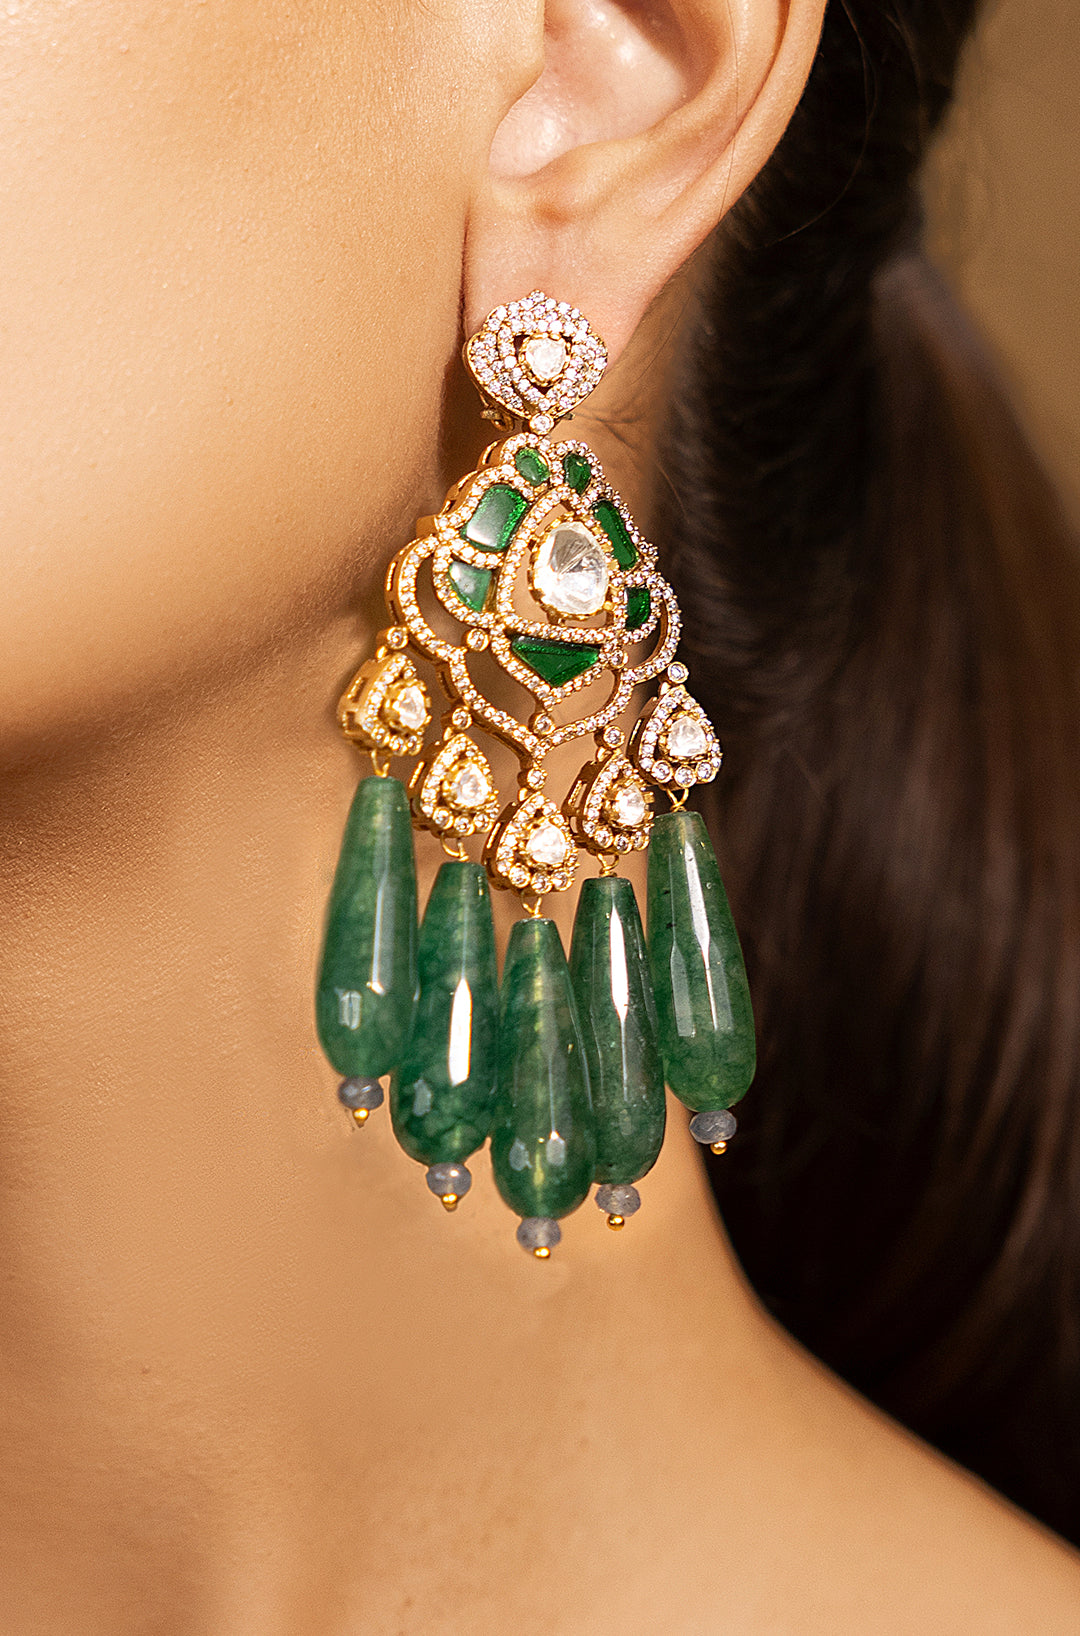 Exquisite Golden-Green Beauty Earrings